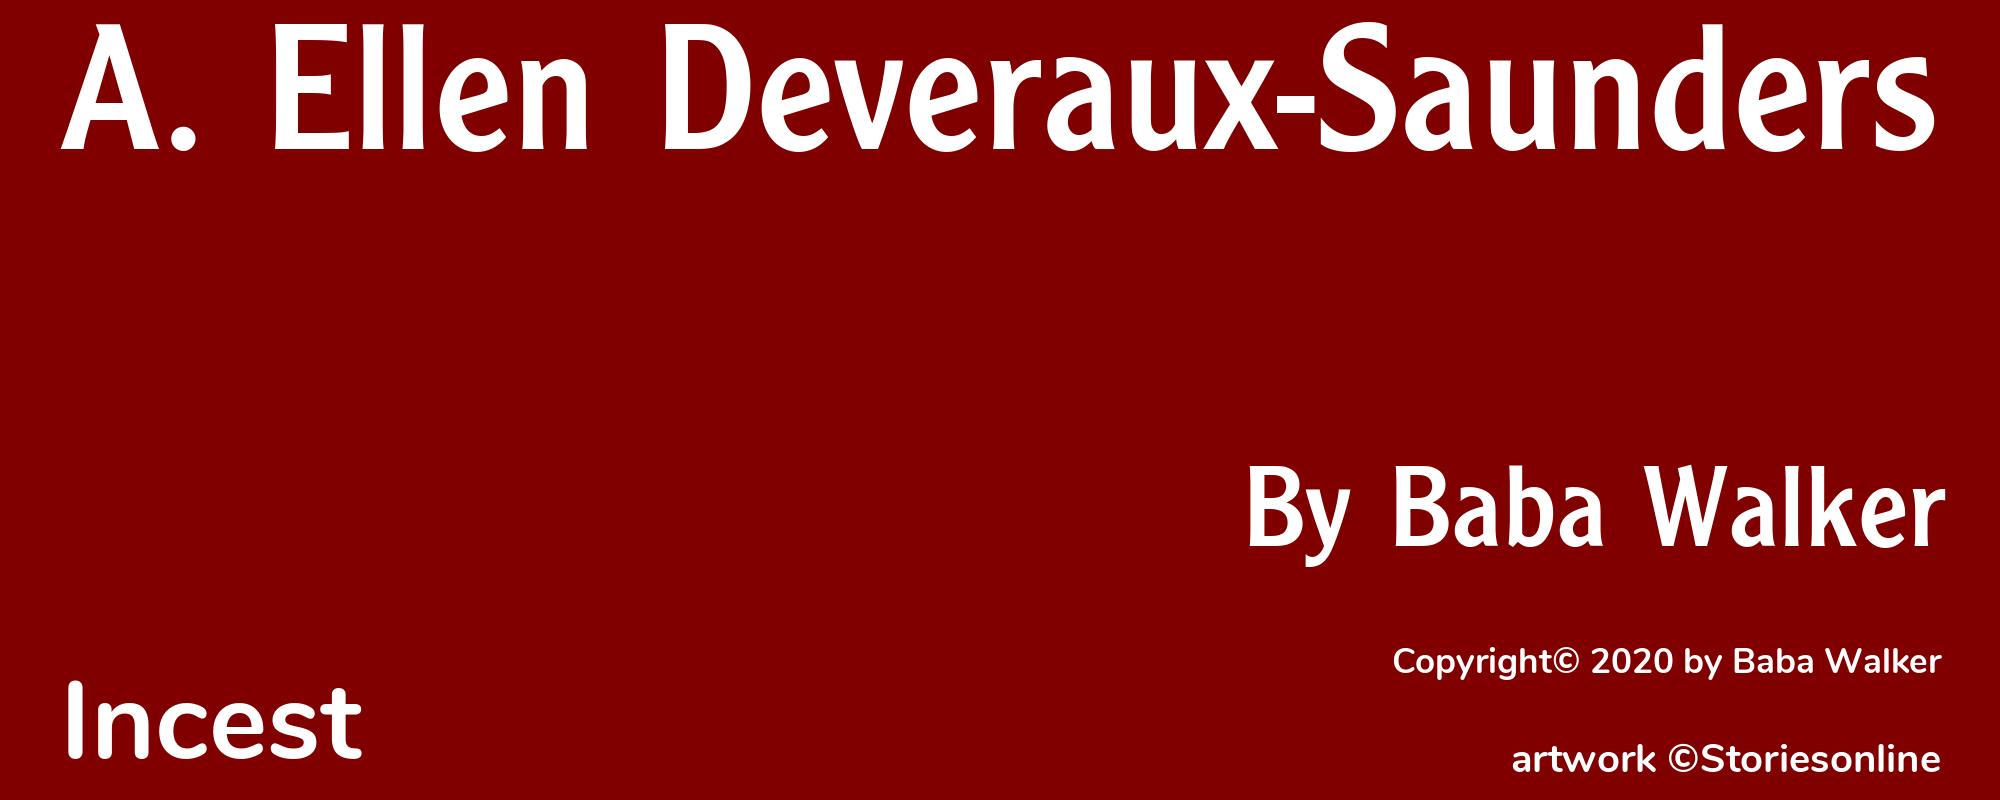 A. Ellen Deveraux-Saunders - Cover